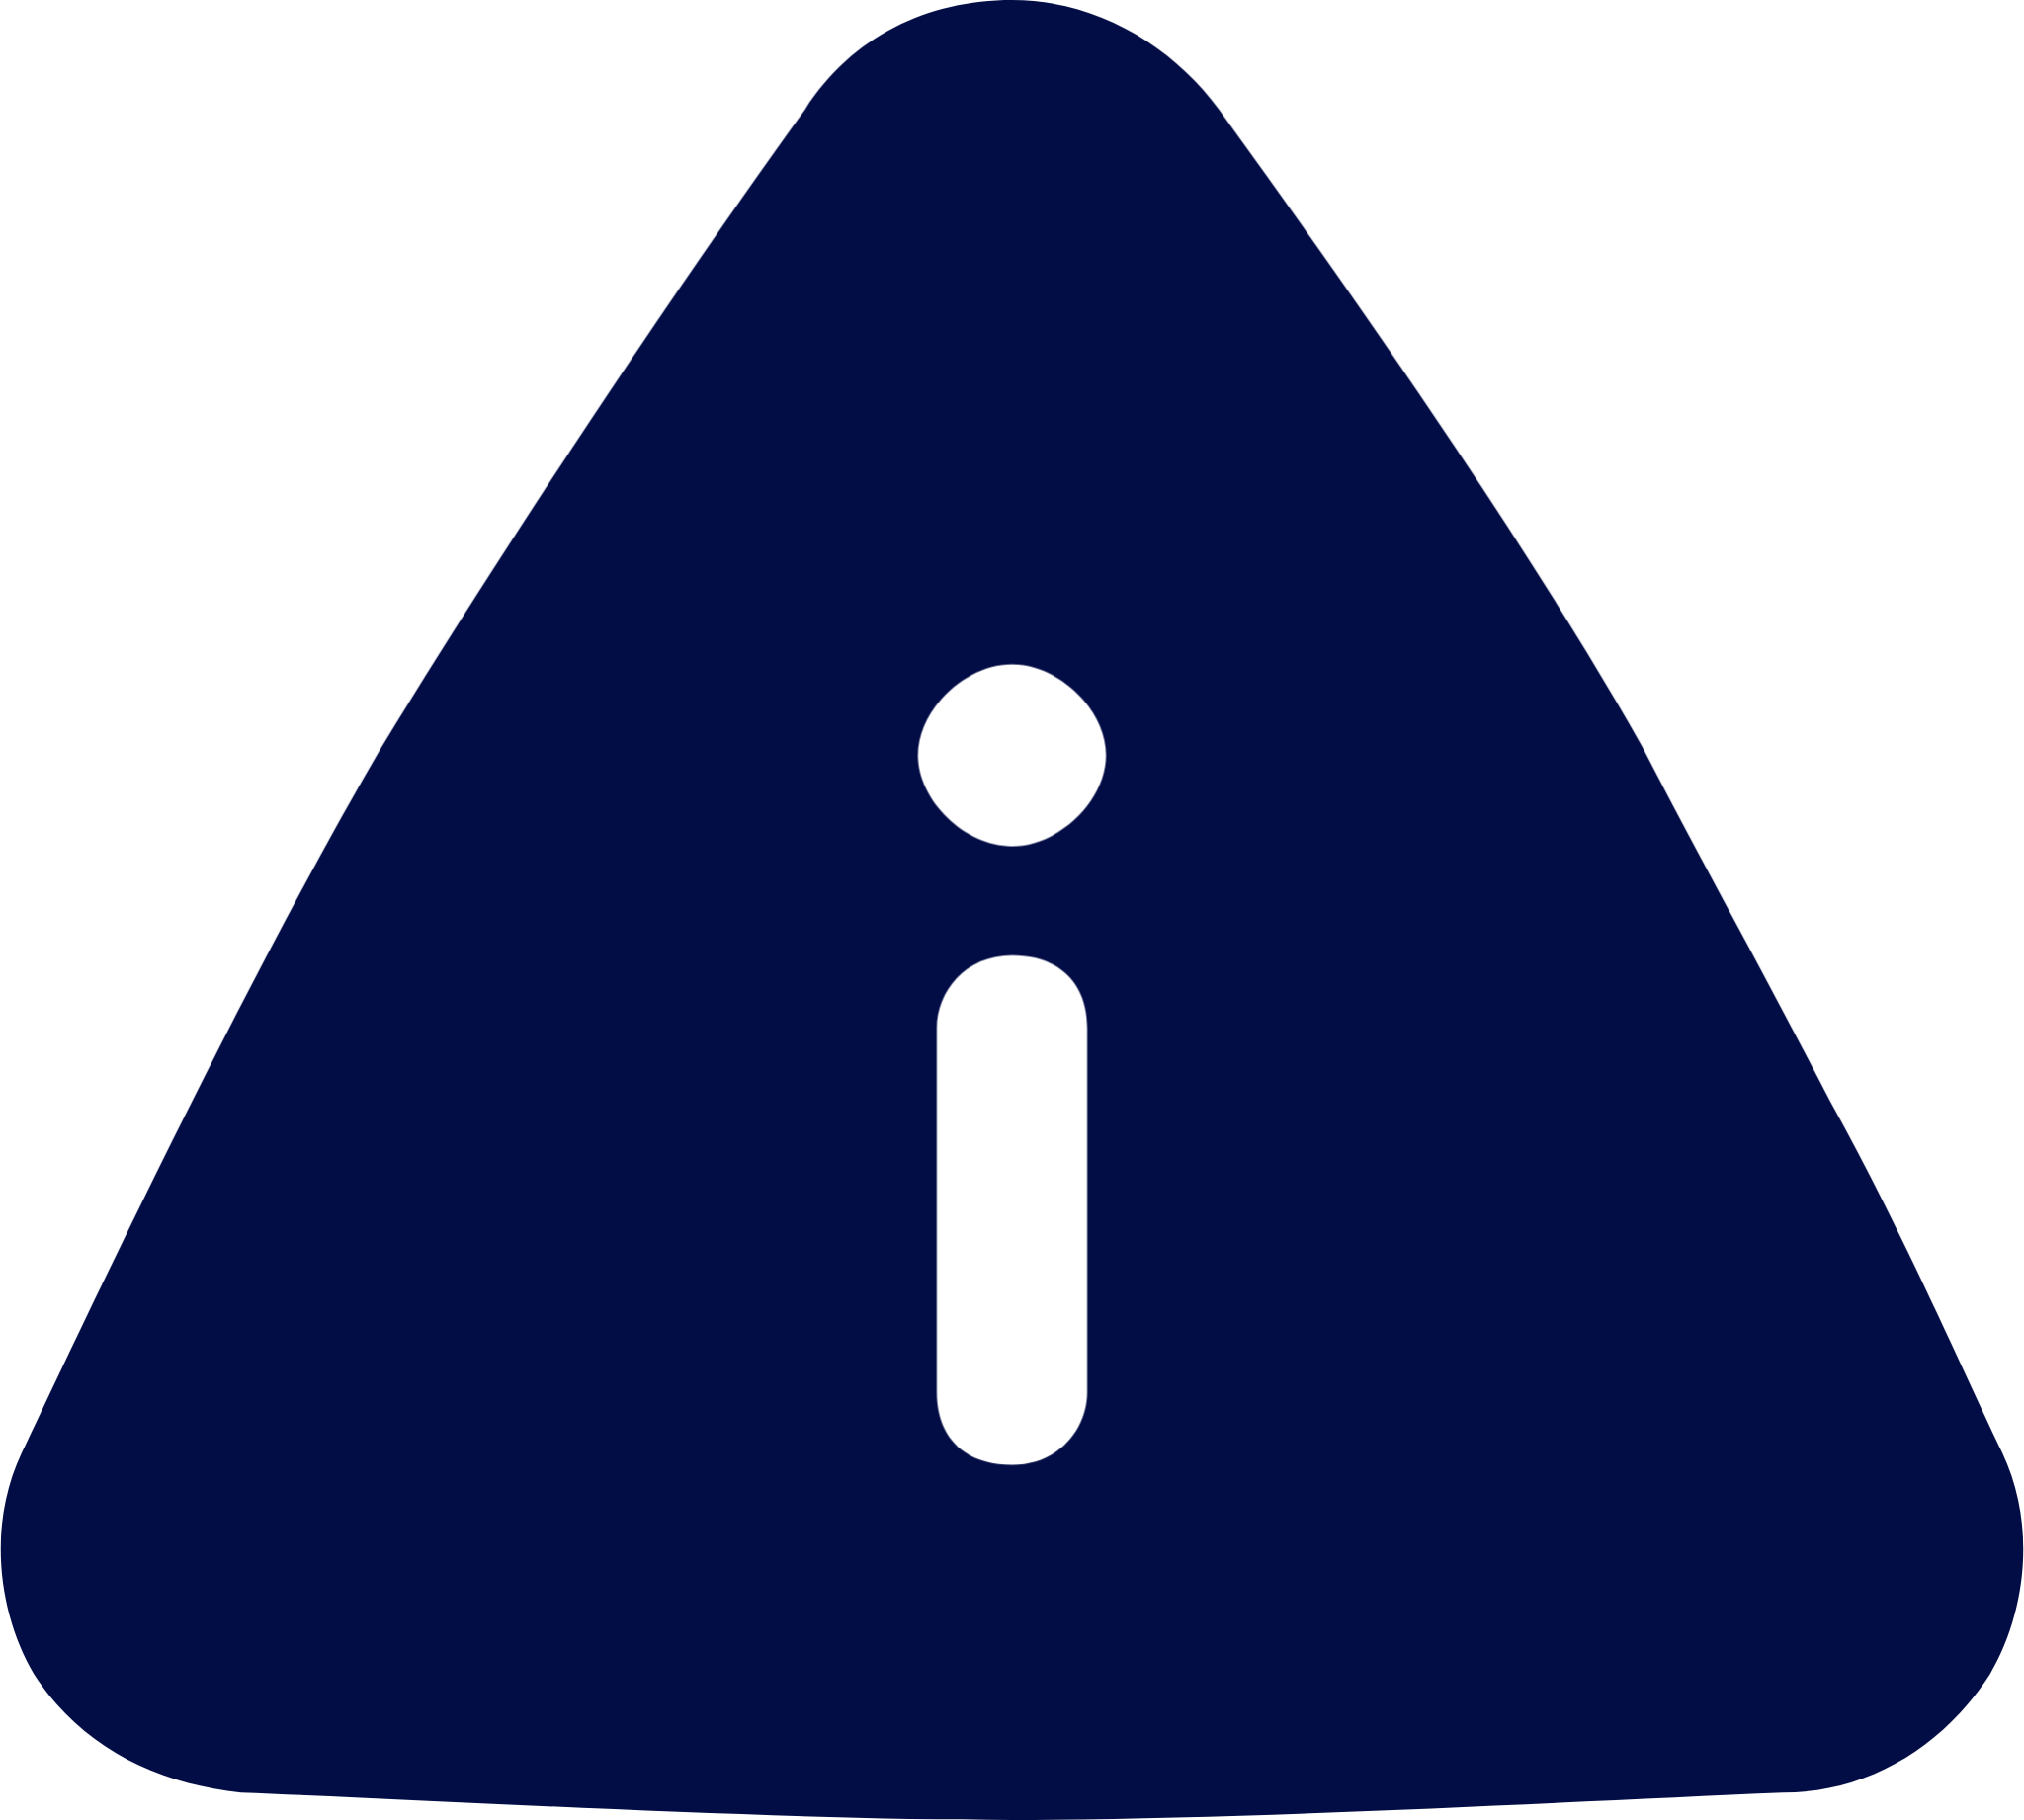 info triangle 1 icon